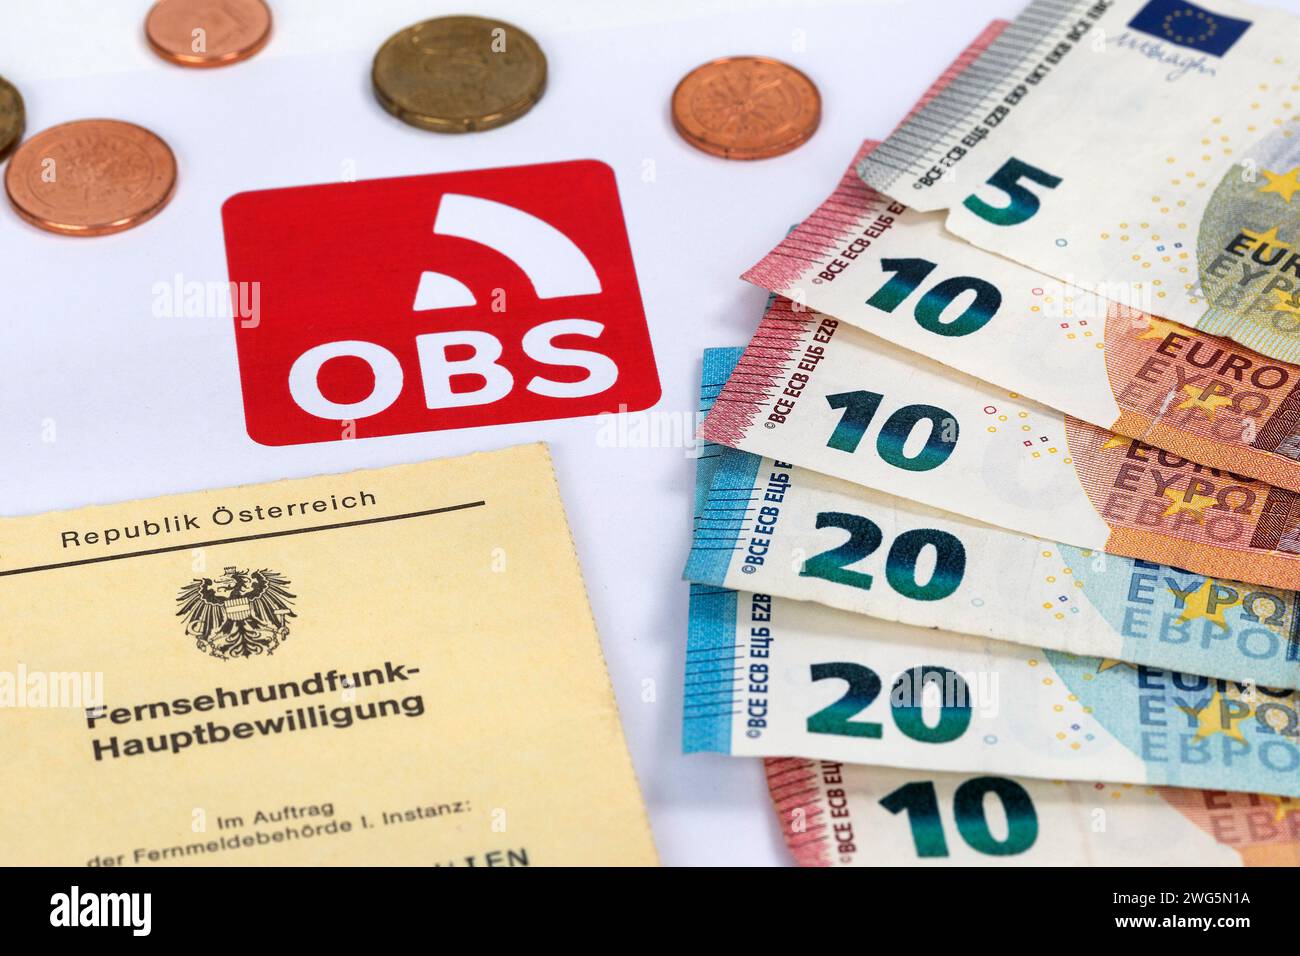 OBS, ORF contribution Service, Autriche Banque D'Images